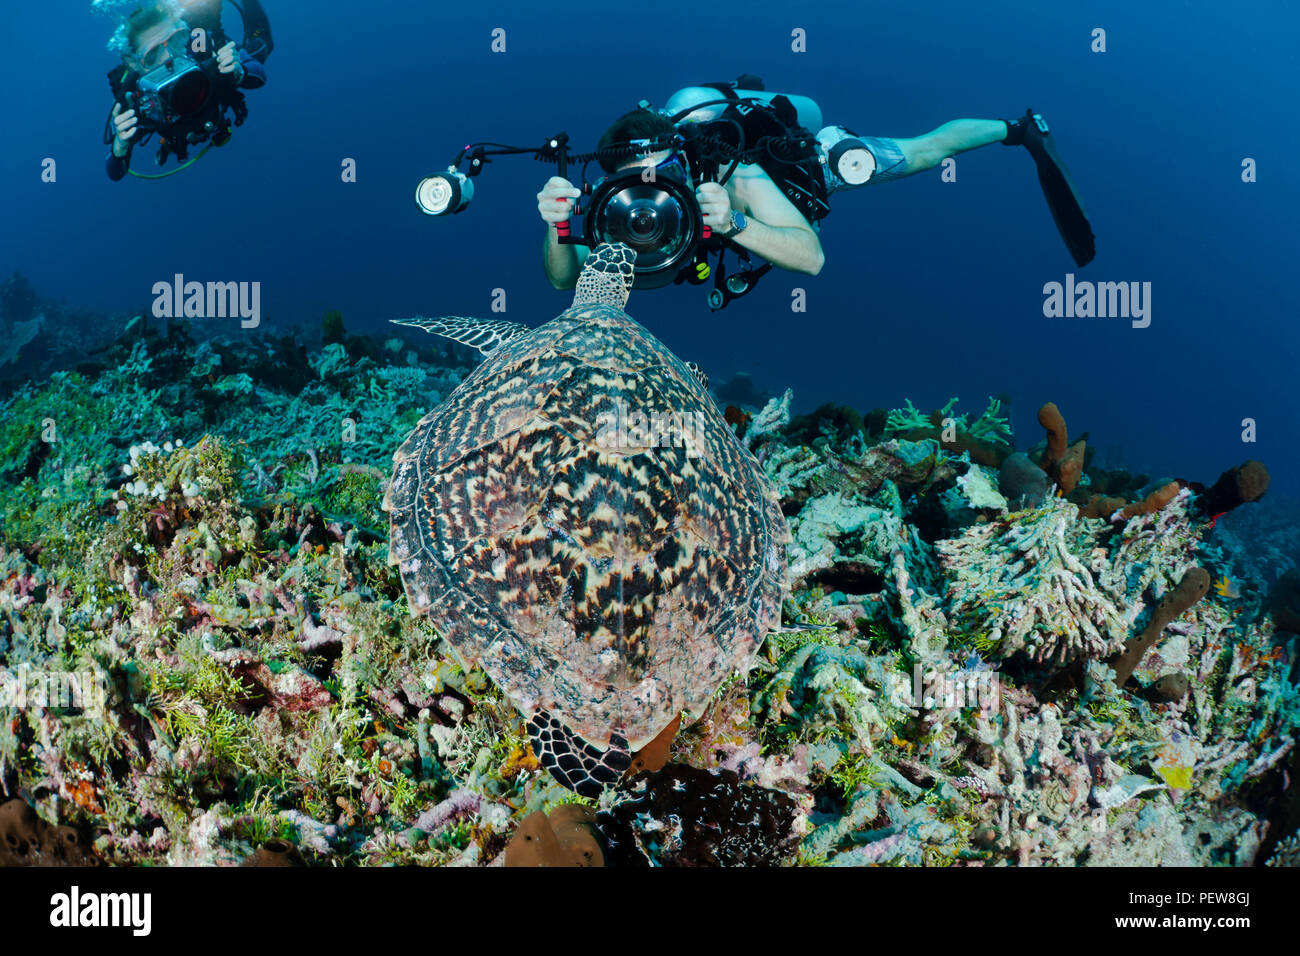 Un subacqueo le riprese di una reflex digitale si ottiene un in-vostro-vista frontale di una tartaruga embricata, Eretmochelys imbricata, su un reef indonesiano. I subacquei sono il modello re Foto Stock